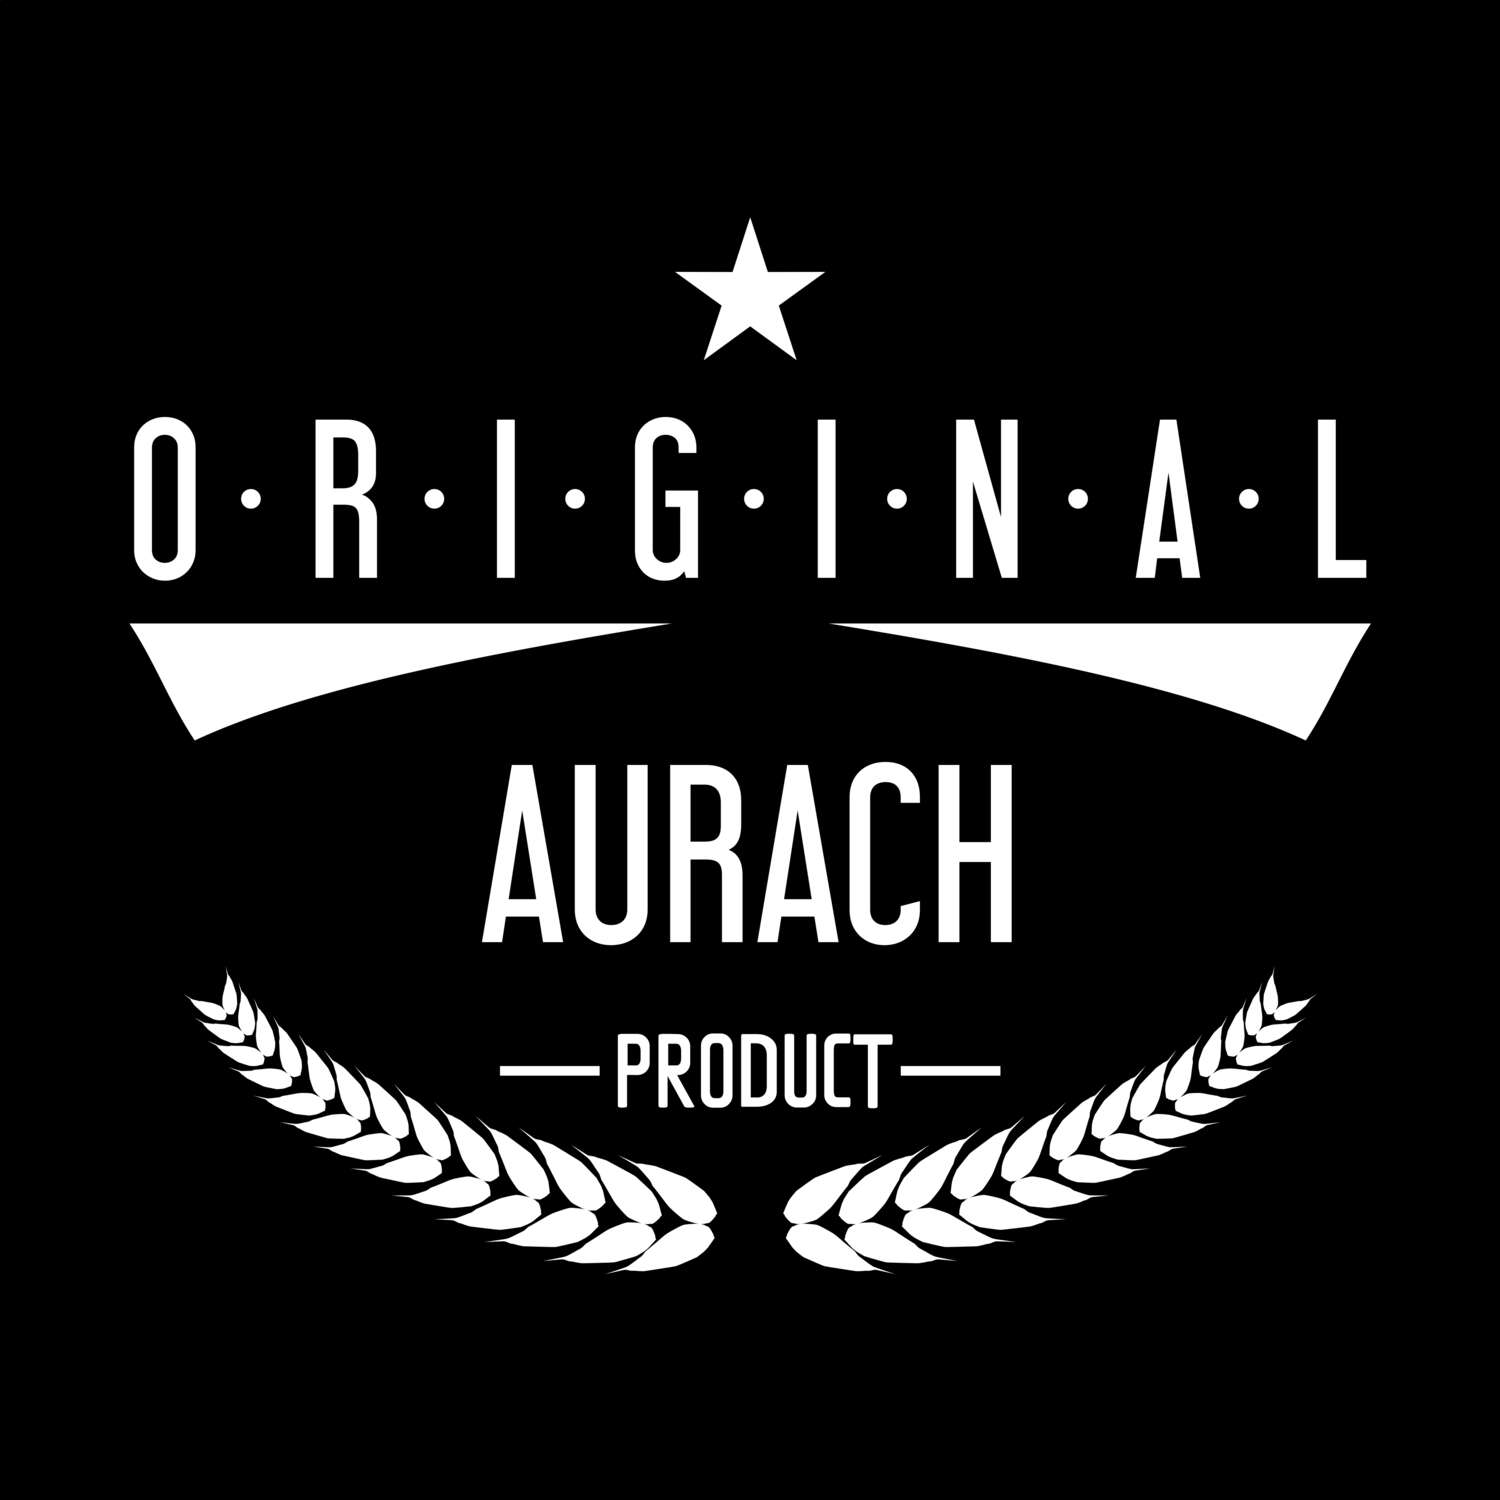 Aurach T-Shirt »Original Product«